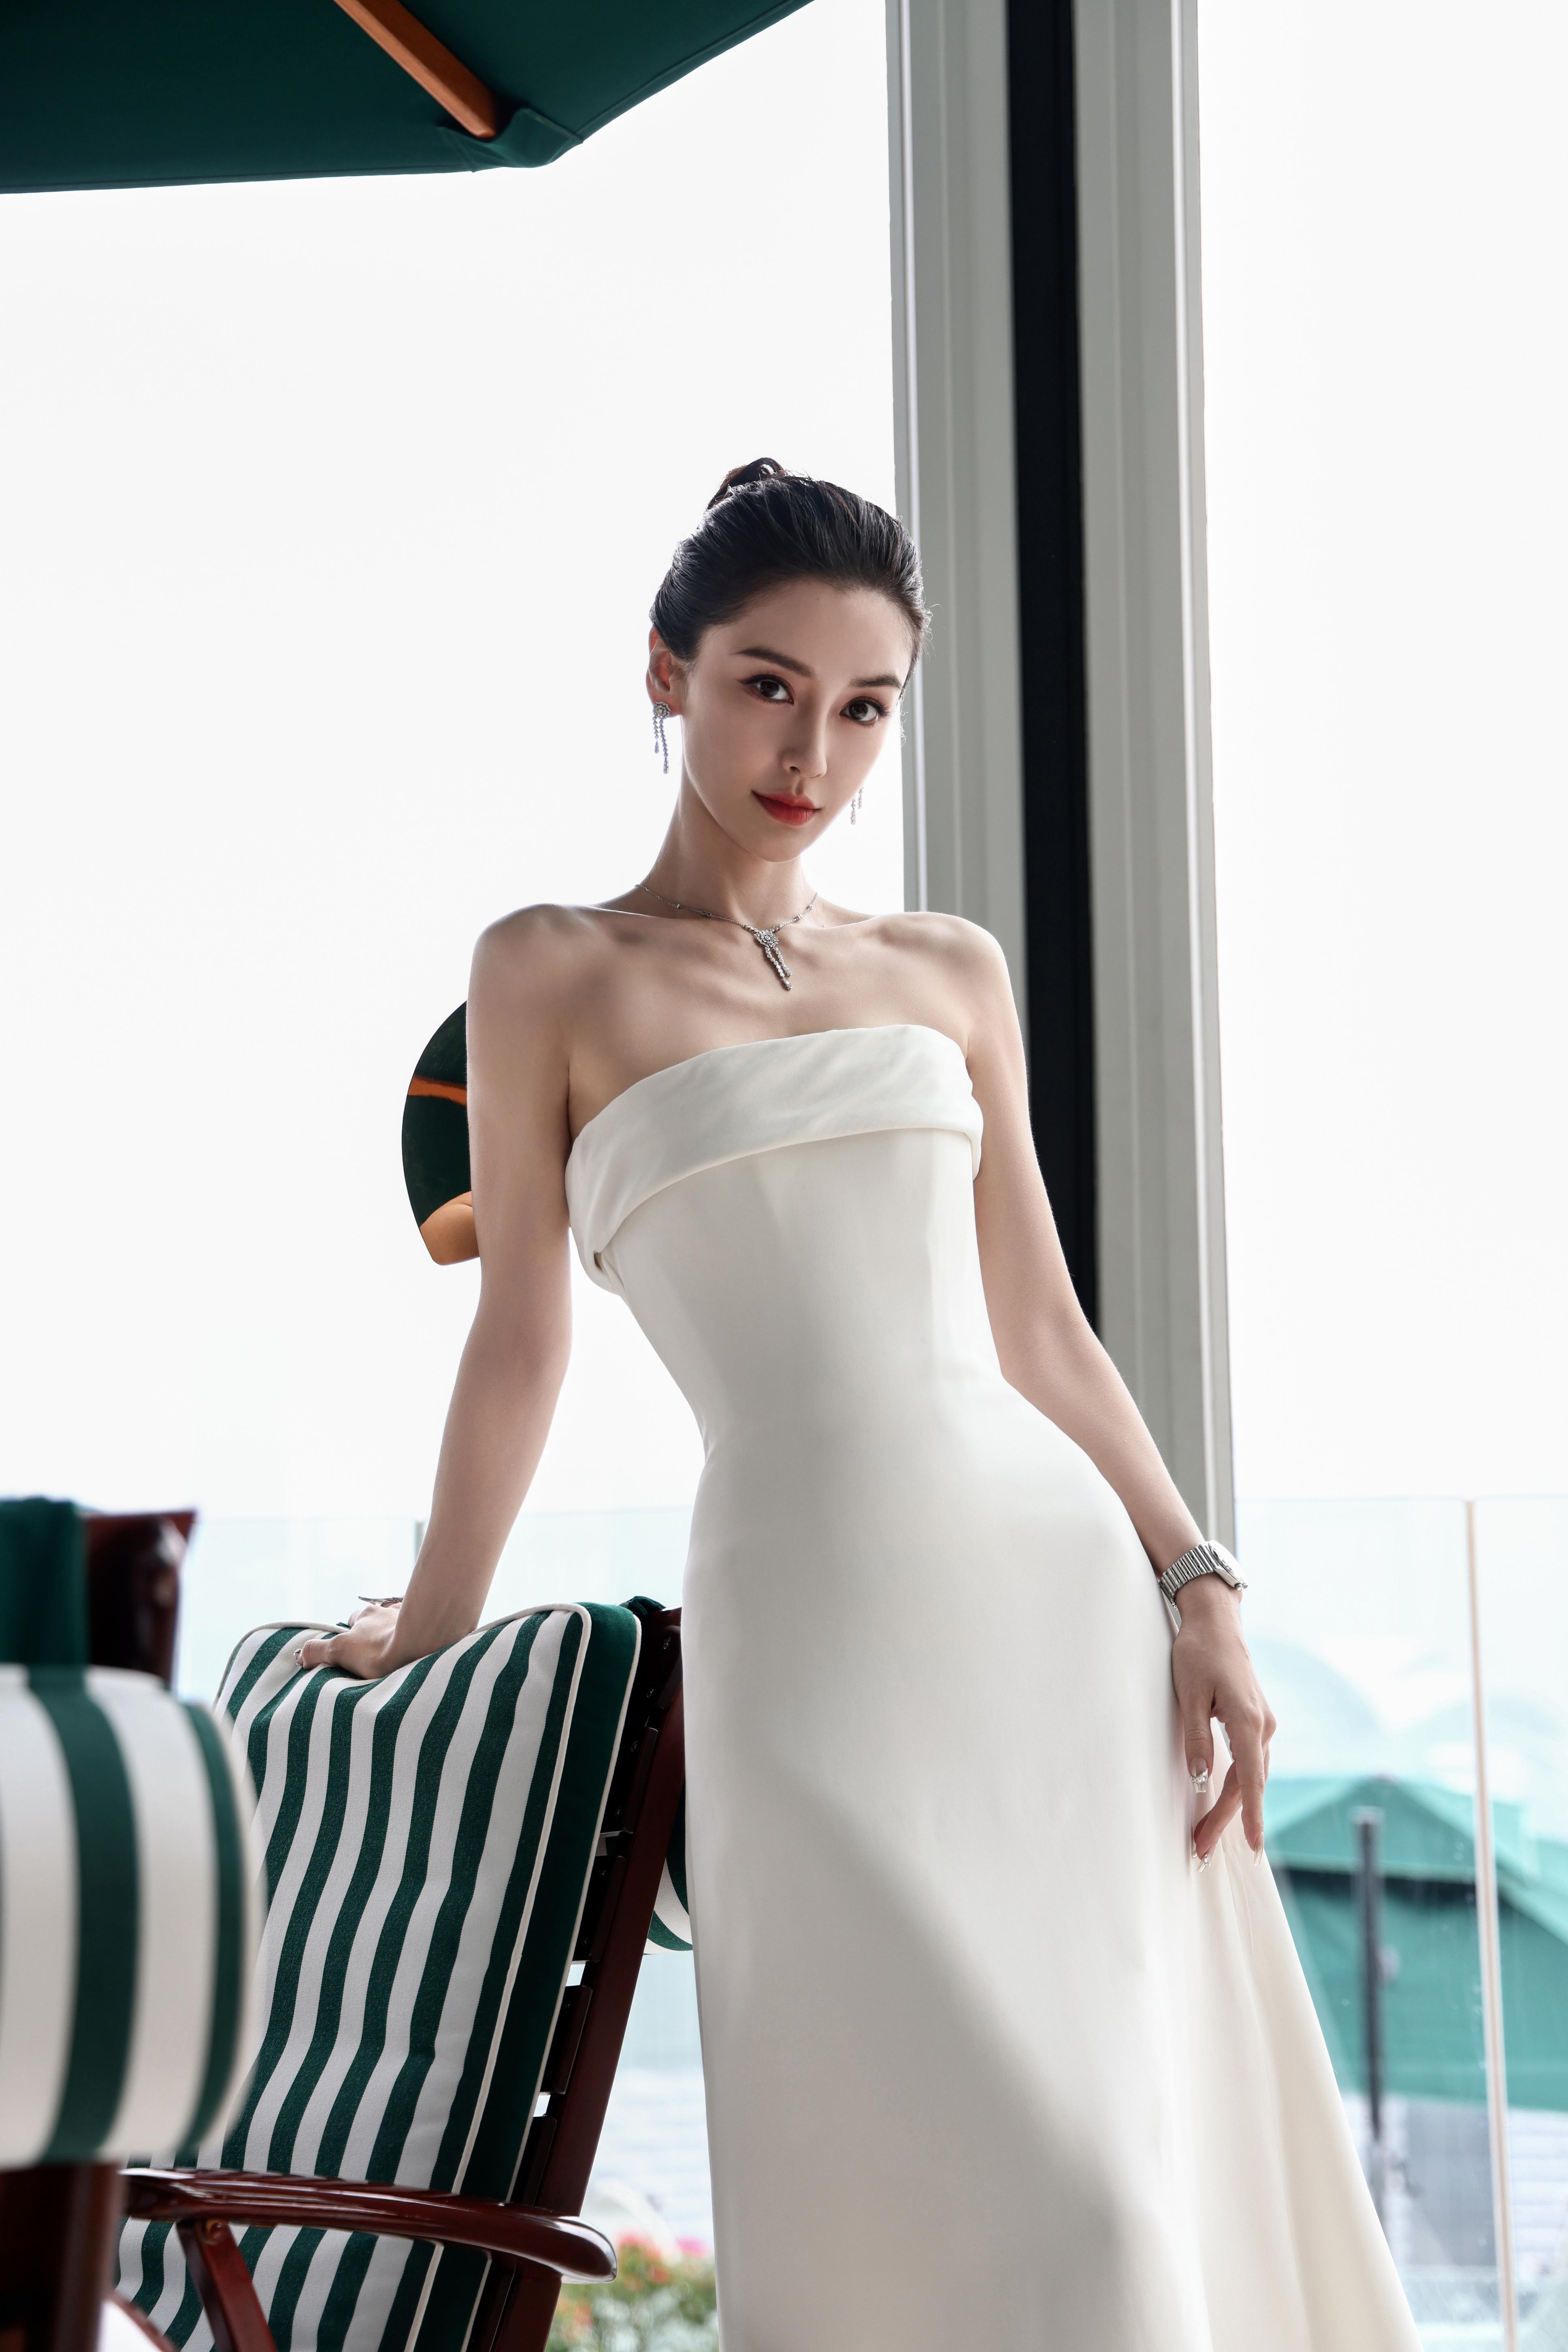 杨颖（Angelababy）受邀出席HK FILMART香港国际影视展 白色抹胸礼服裙皎若荧月,a4